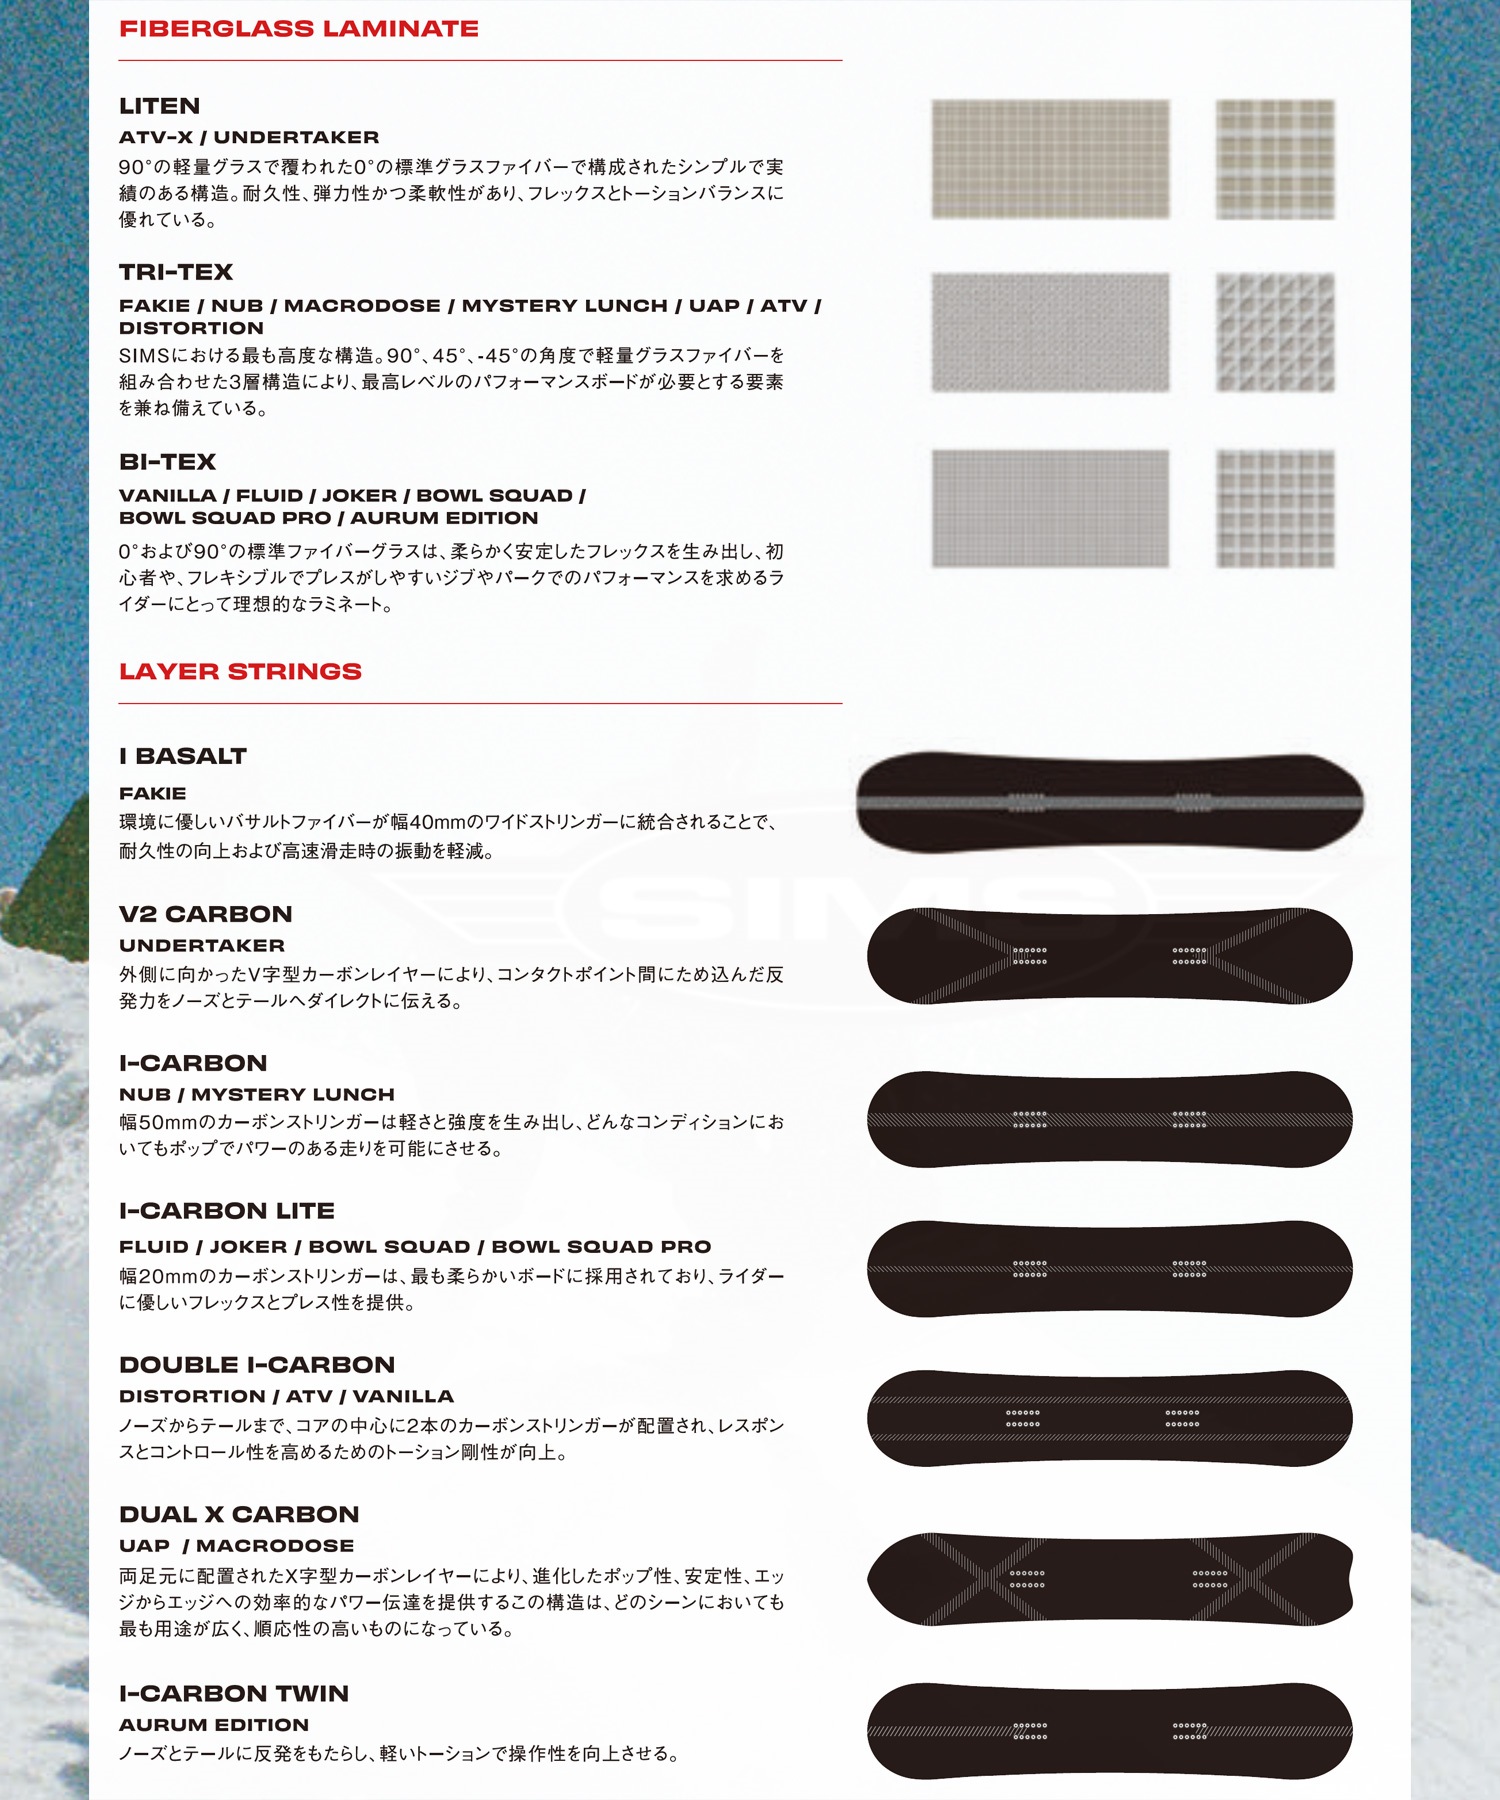 【早期購入】SIMS シムス スノーボード 板 メンズ 日本限定カラー NUB-JP LTD COLOR ムラサキスポーツ 24-25モデル LL B1(BL-145.5cm)